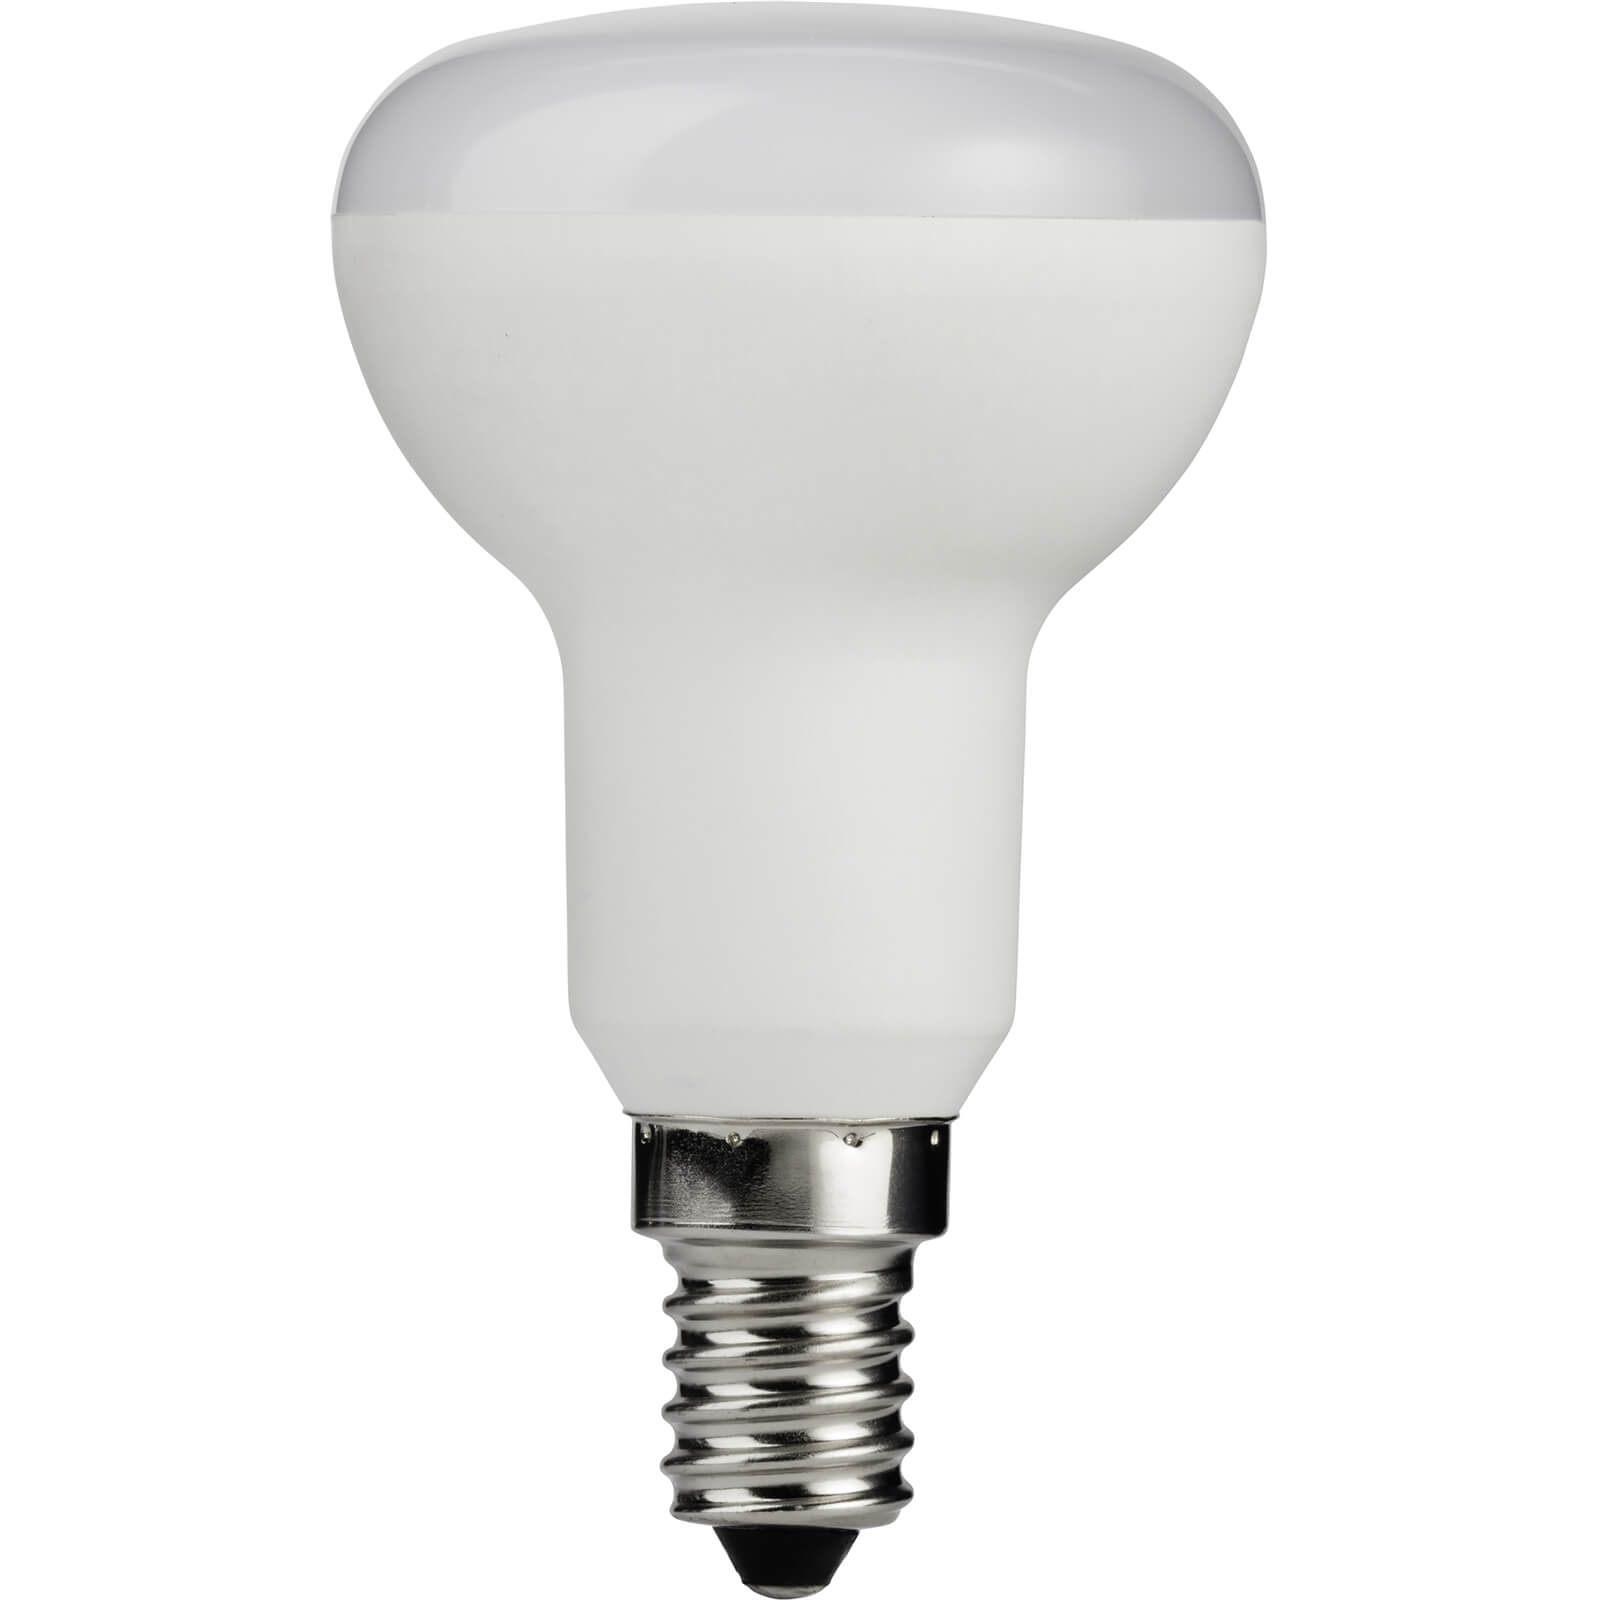 Photo of White R50 Ses 4.7w Led Light Bulb